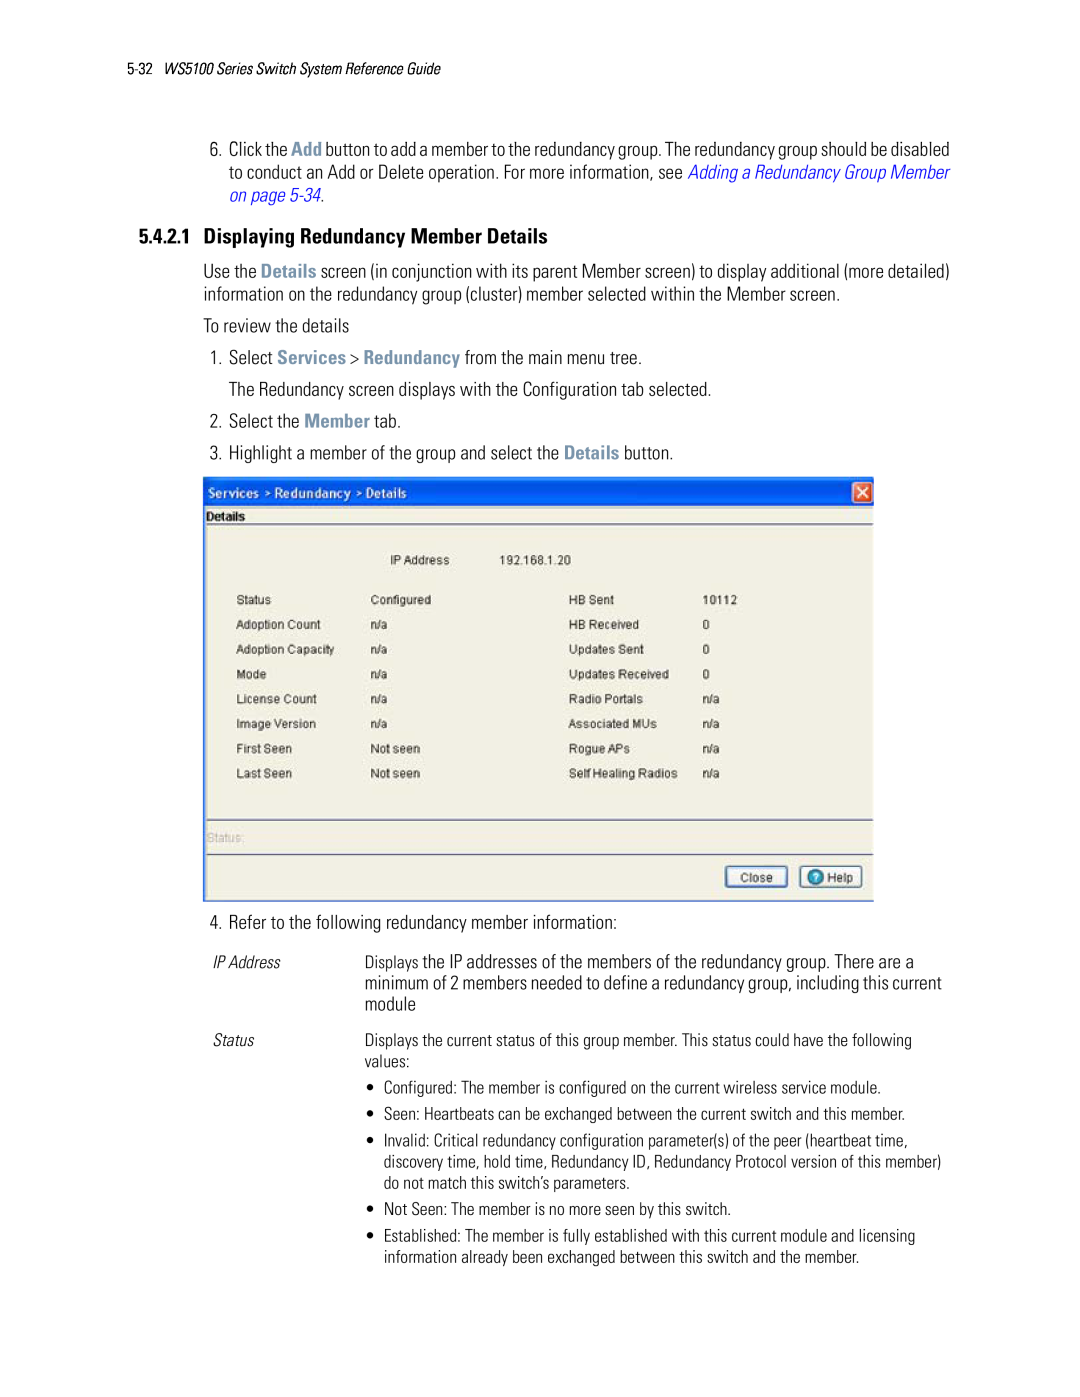 Motorola WS5100 manual 5.4.2.1Displaying Redundancy Member Details, module 